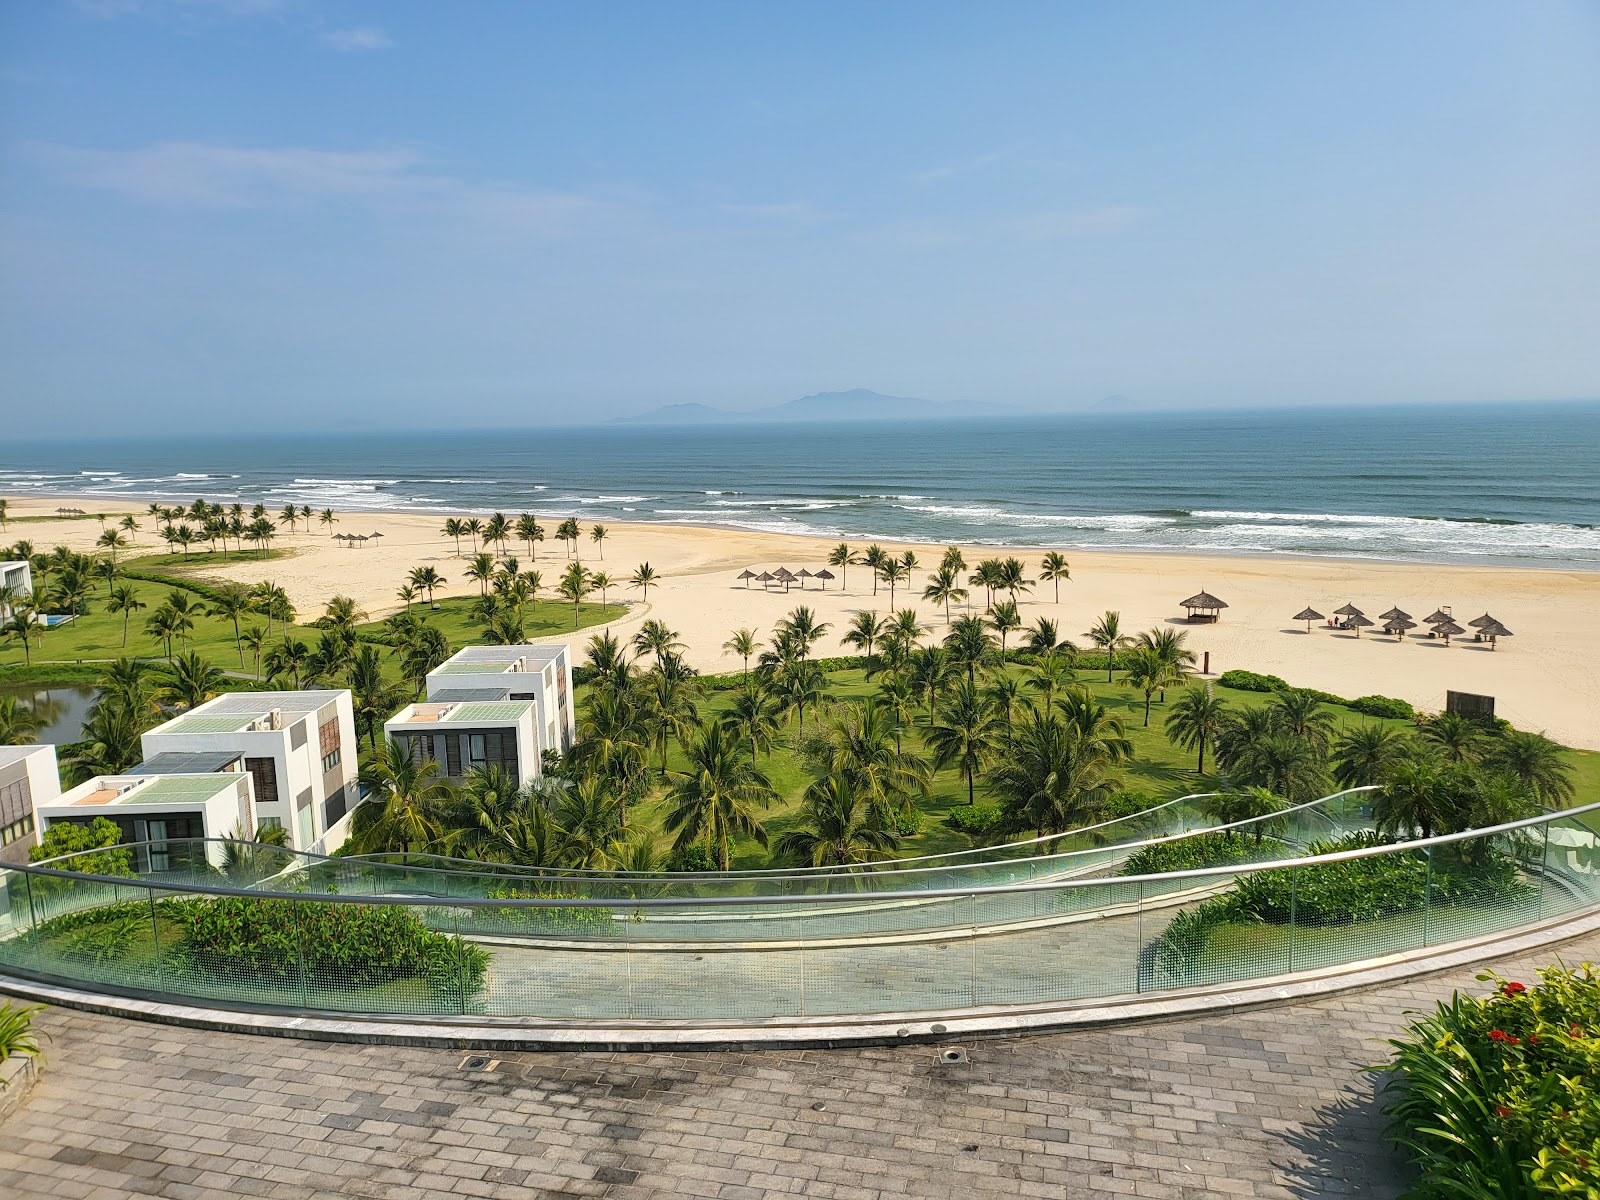 Photo de Thang Binh Beach - endroit populaire parmi les connaisseurs de la détente